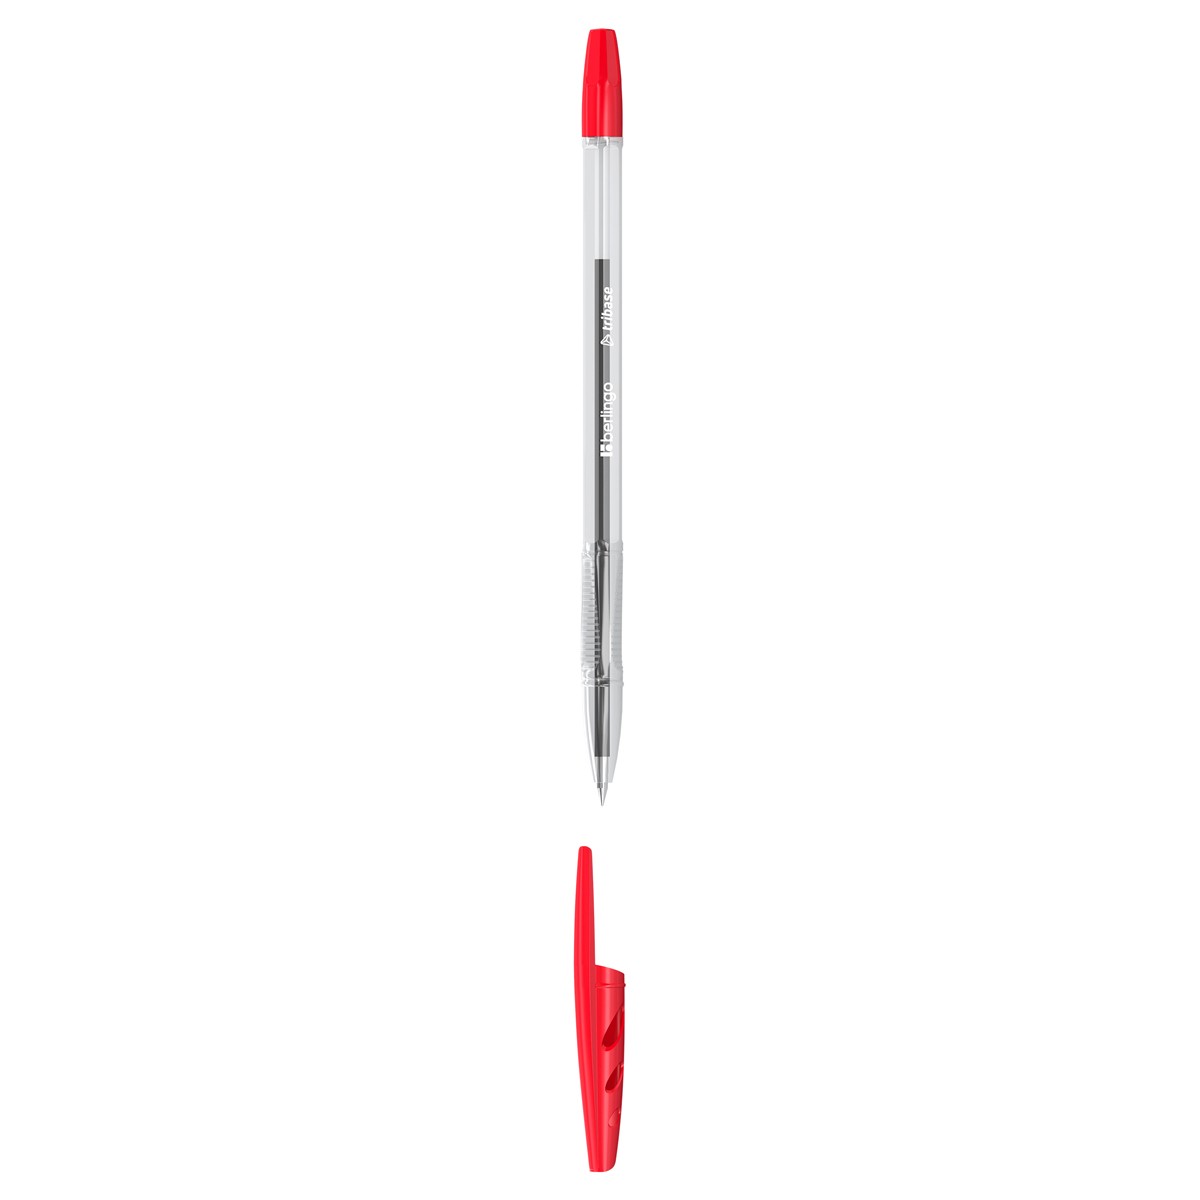 Ручка шариковая Berlingo Tribase красная, 1,0мм